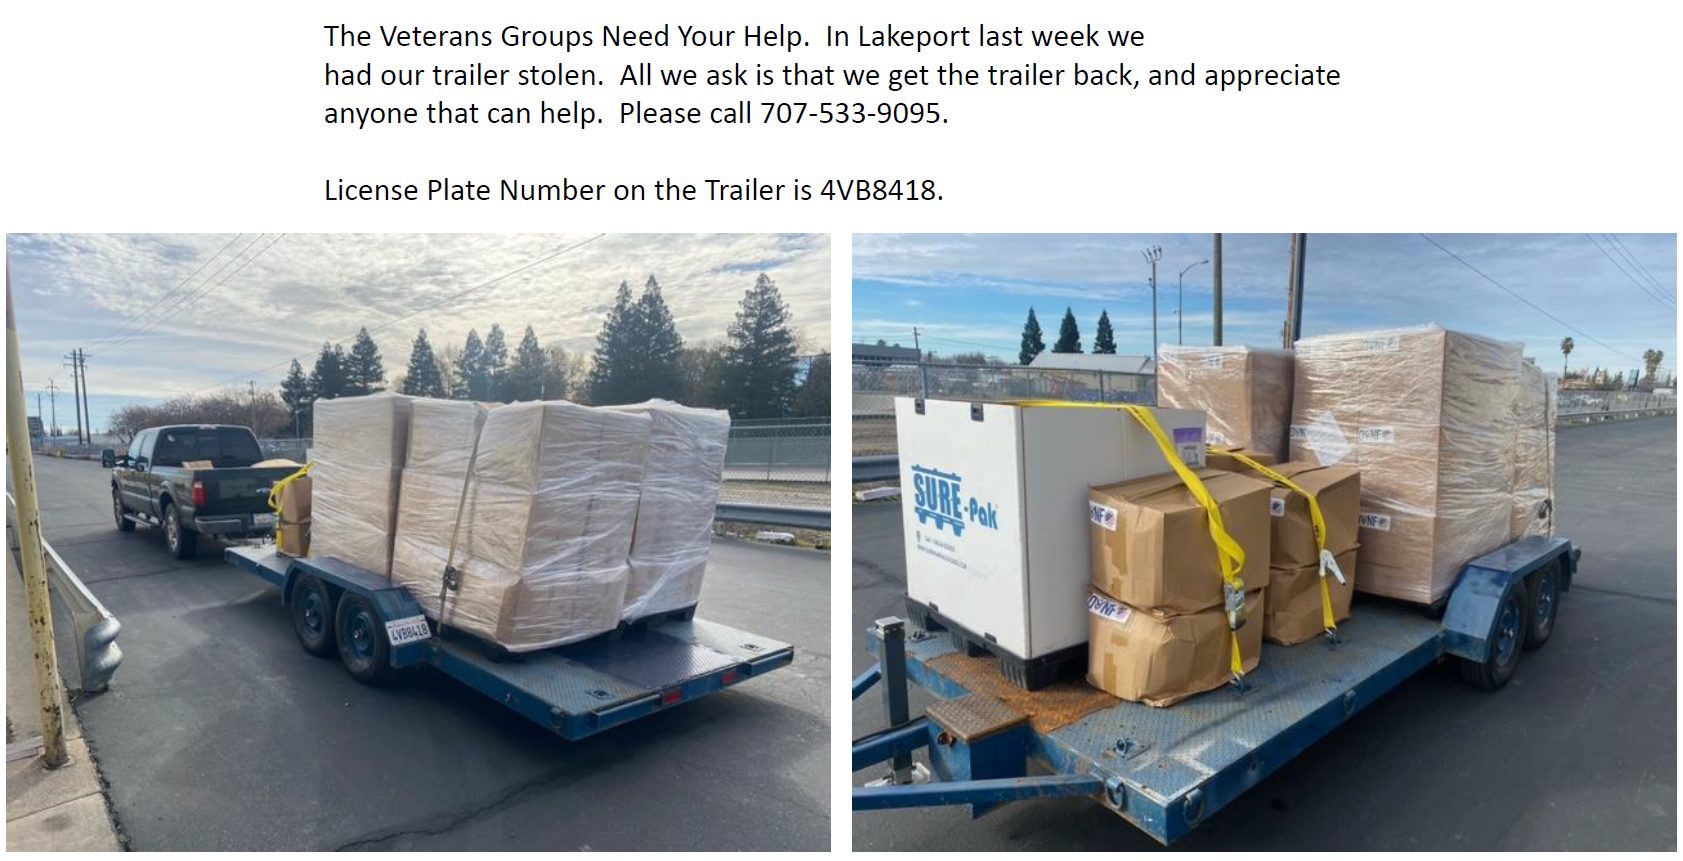 United Veterans trailer stolen - we need your help! 707-533-9095